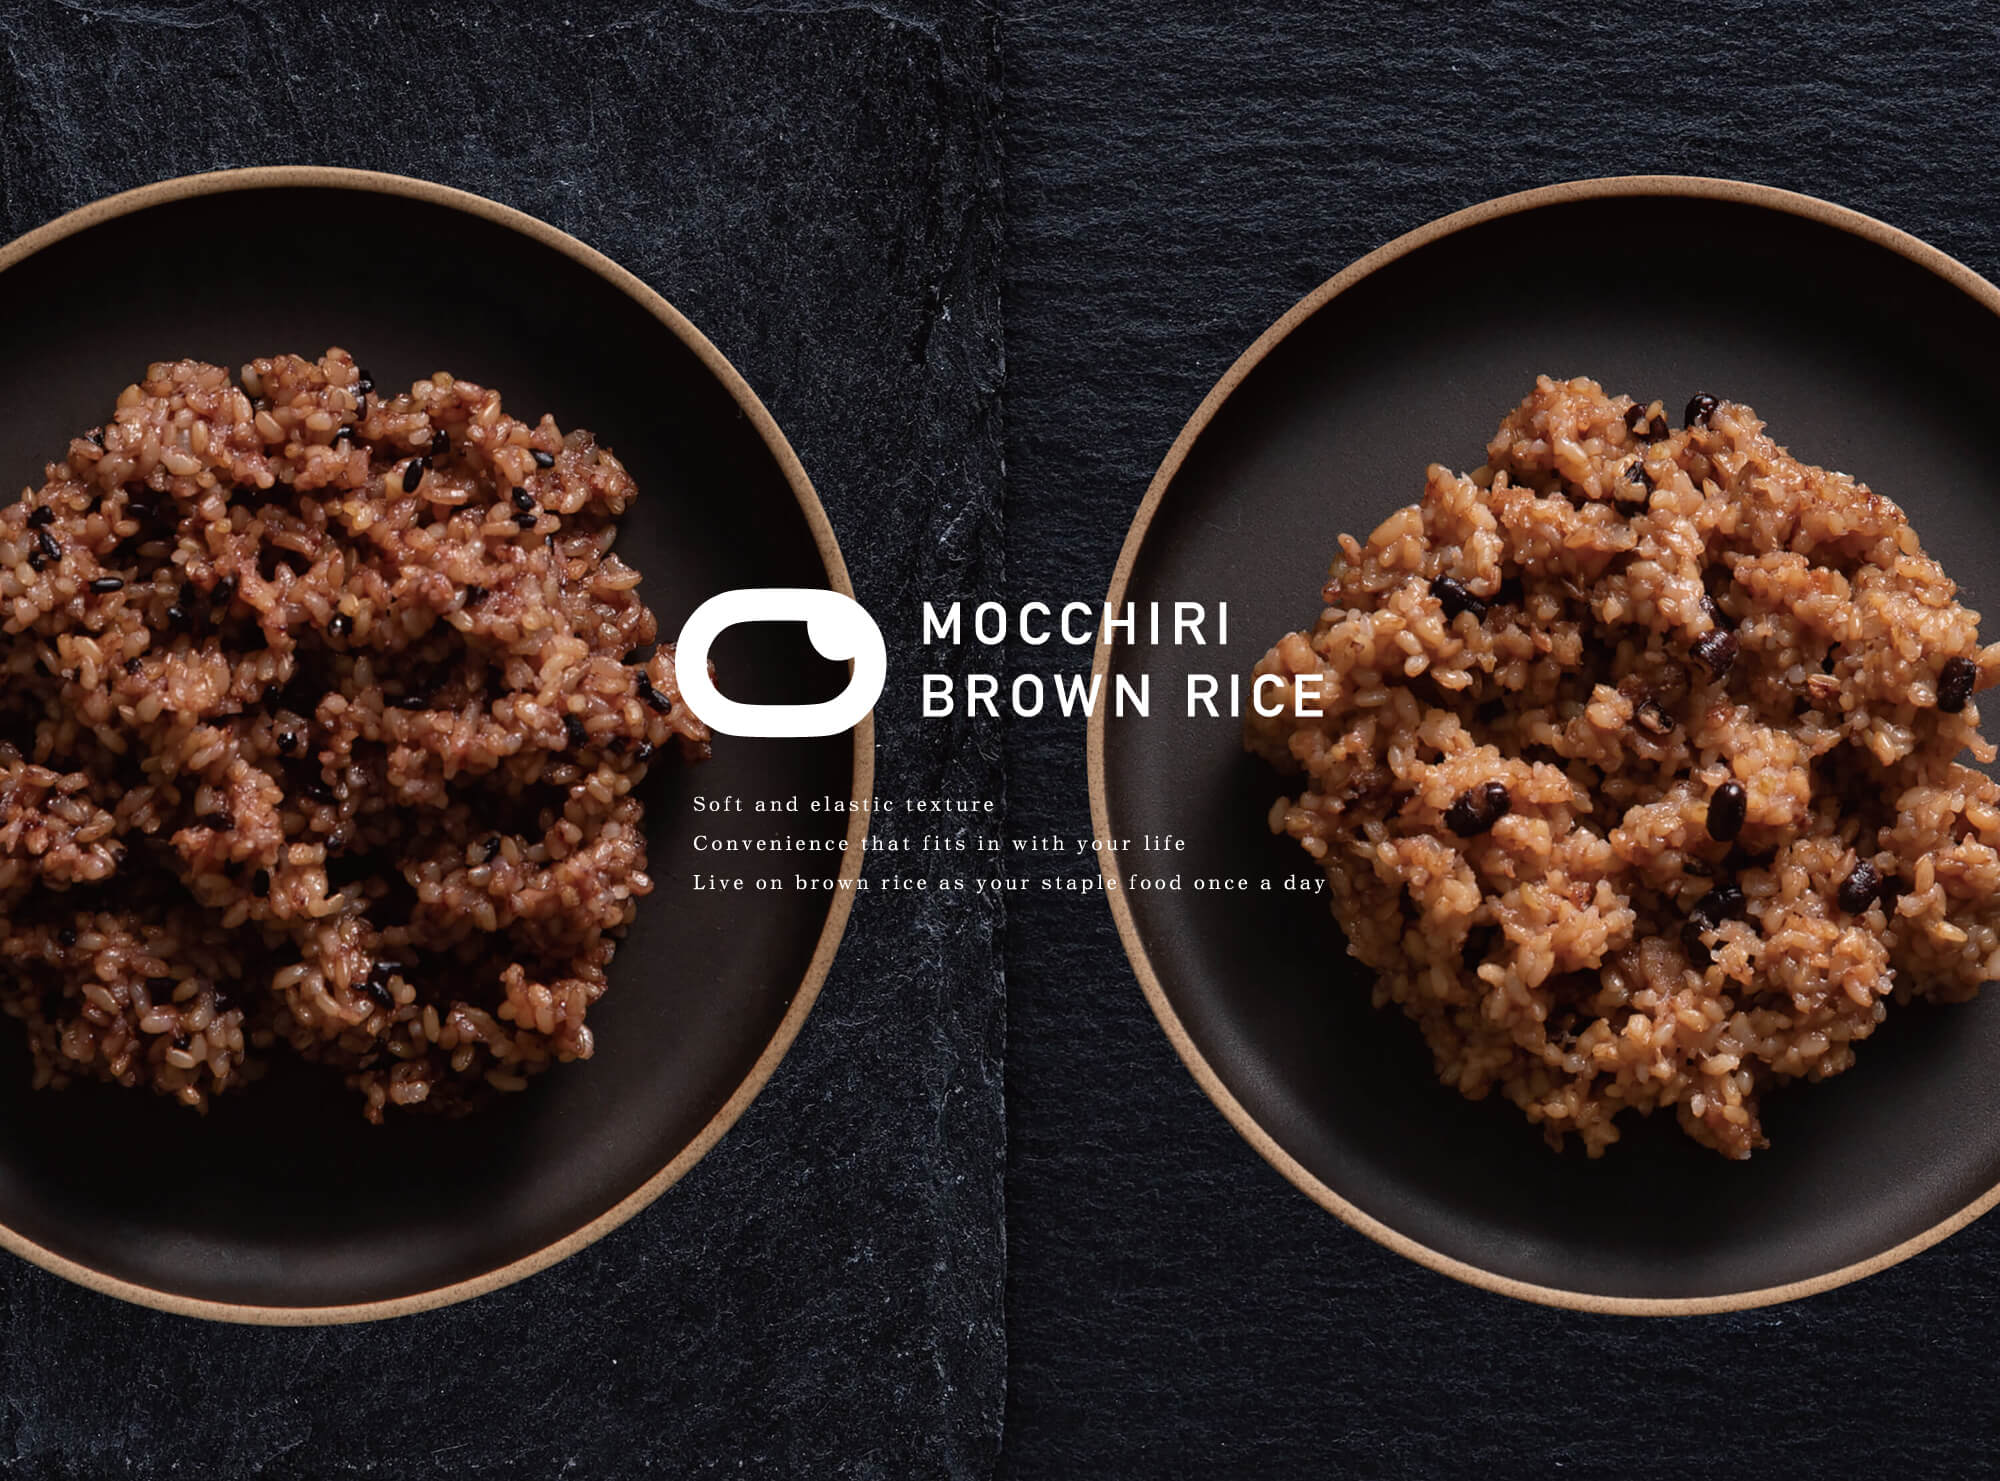 MOCCHIRI BROWN RICE brand site | DESIGN STUDIO RICE | 栃木県宇都宮市のデザイン事務所